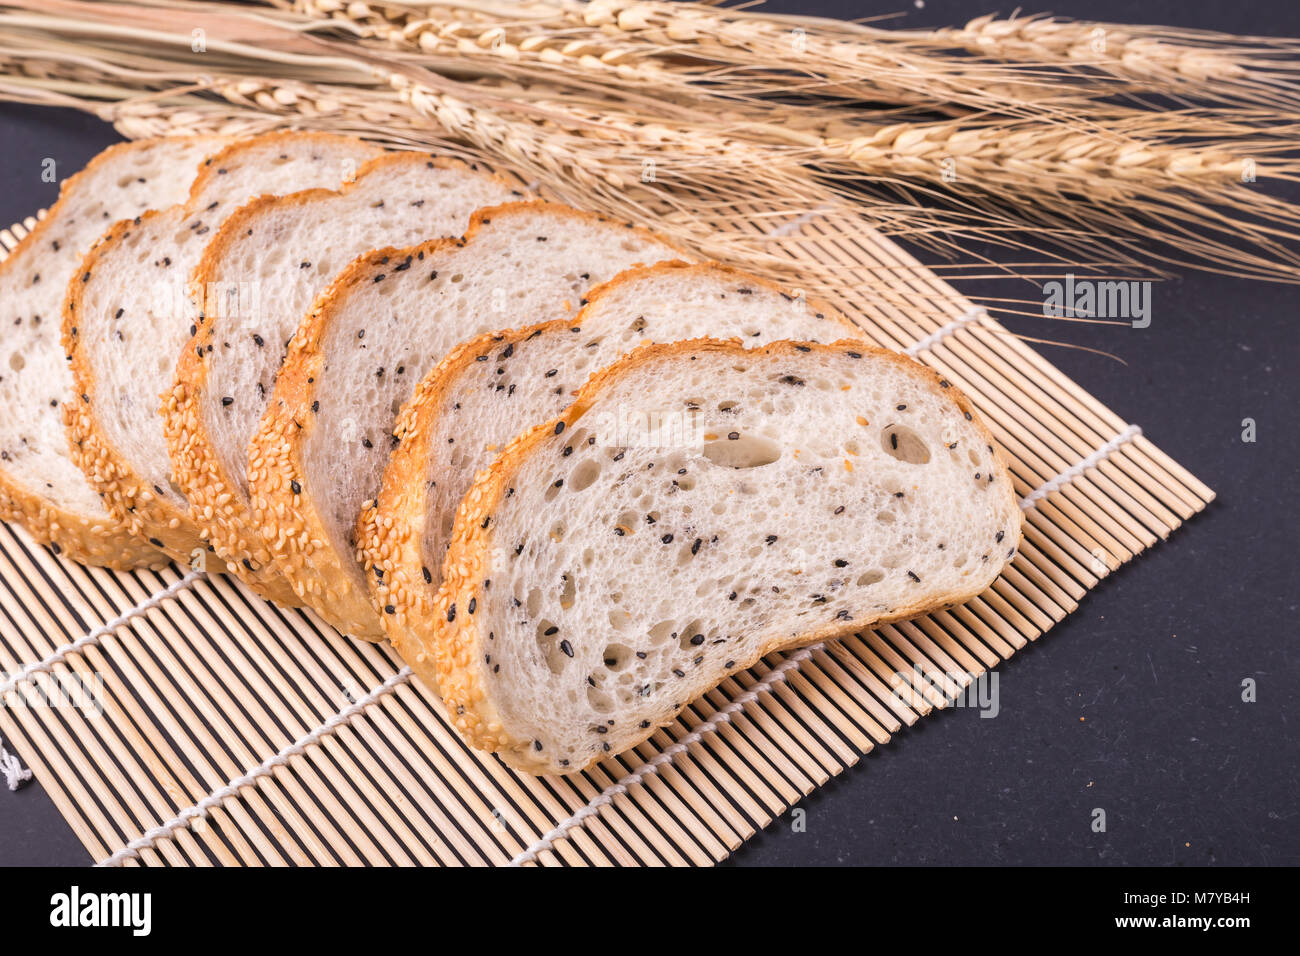 Что внутри хлеба. Хлеб внутри белый. Мясной хлеб с белым и черным кунжутом сверху. Белый хлеб внутри чёрное. Хлеб белый с чёрным Виесте.